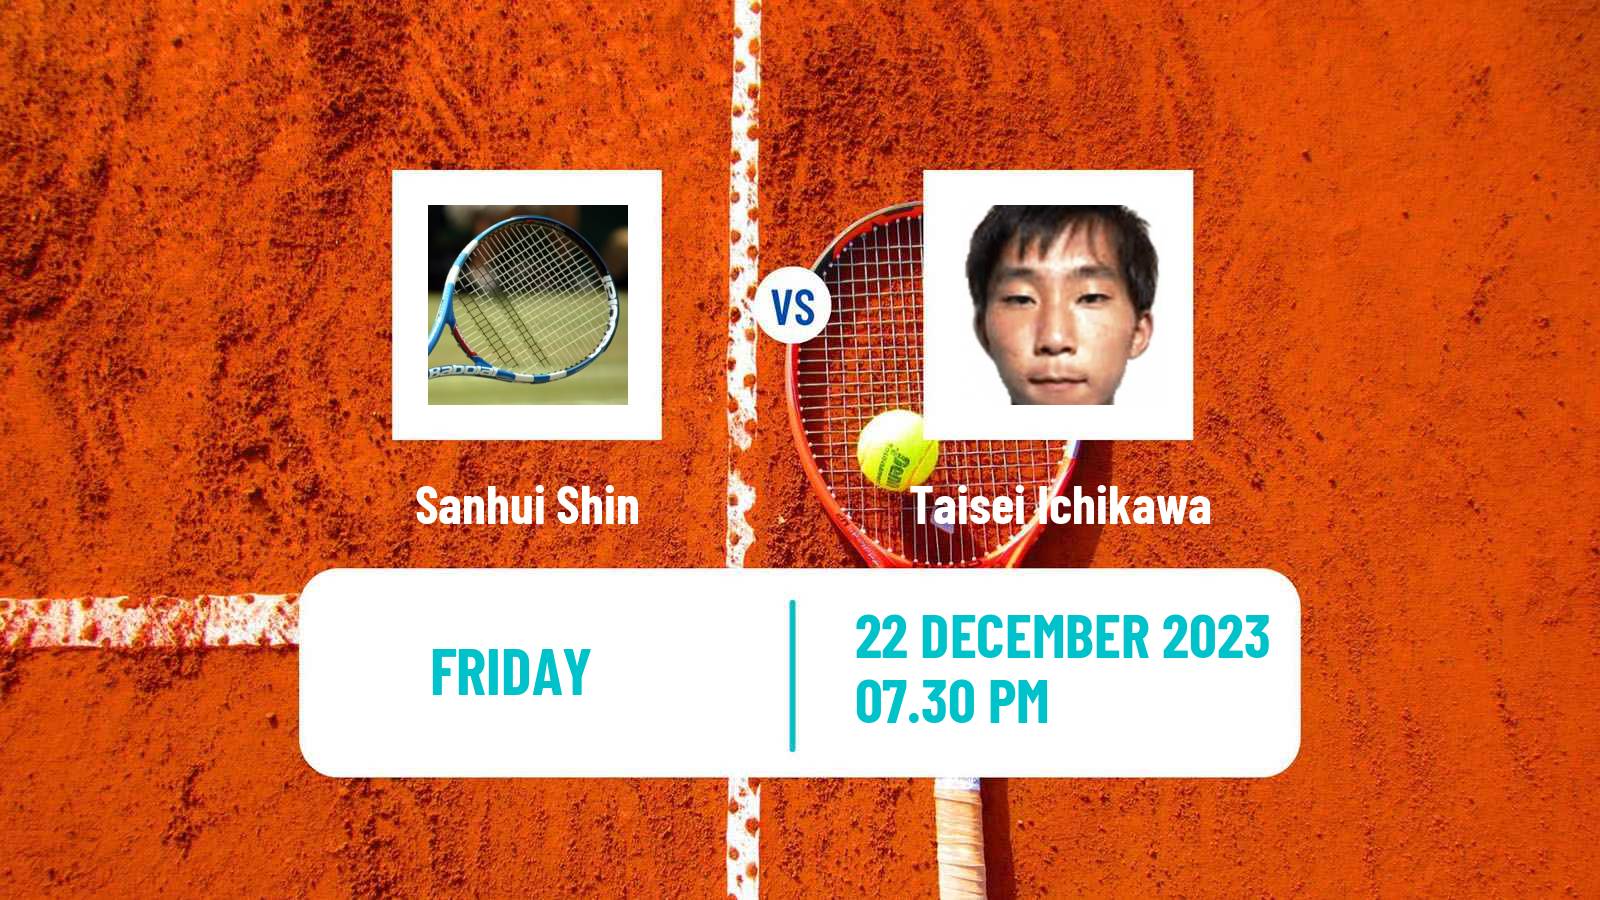 Tennis ITF M15 Yanagawa Men Sanhui Shin - Taisei Ichikawa